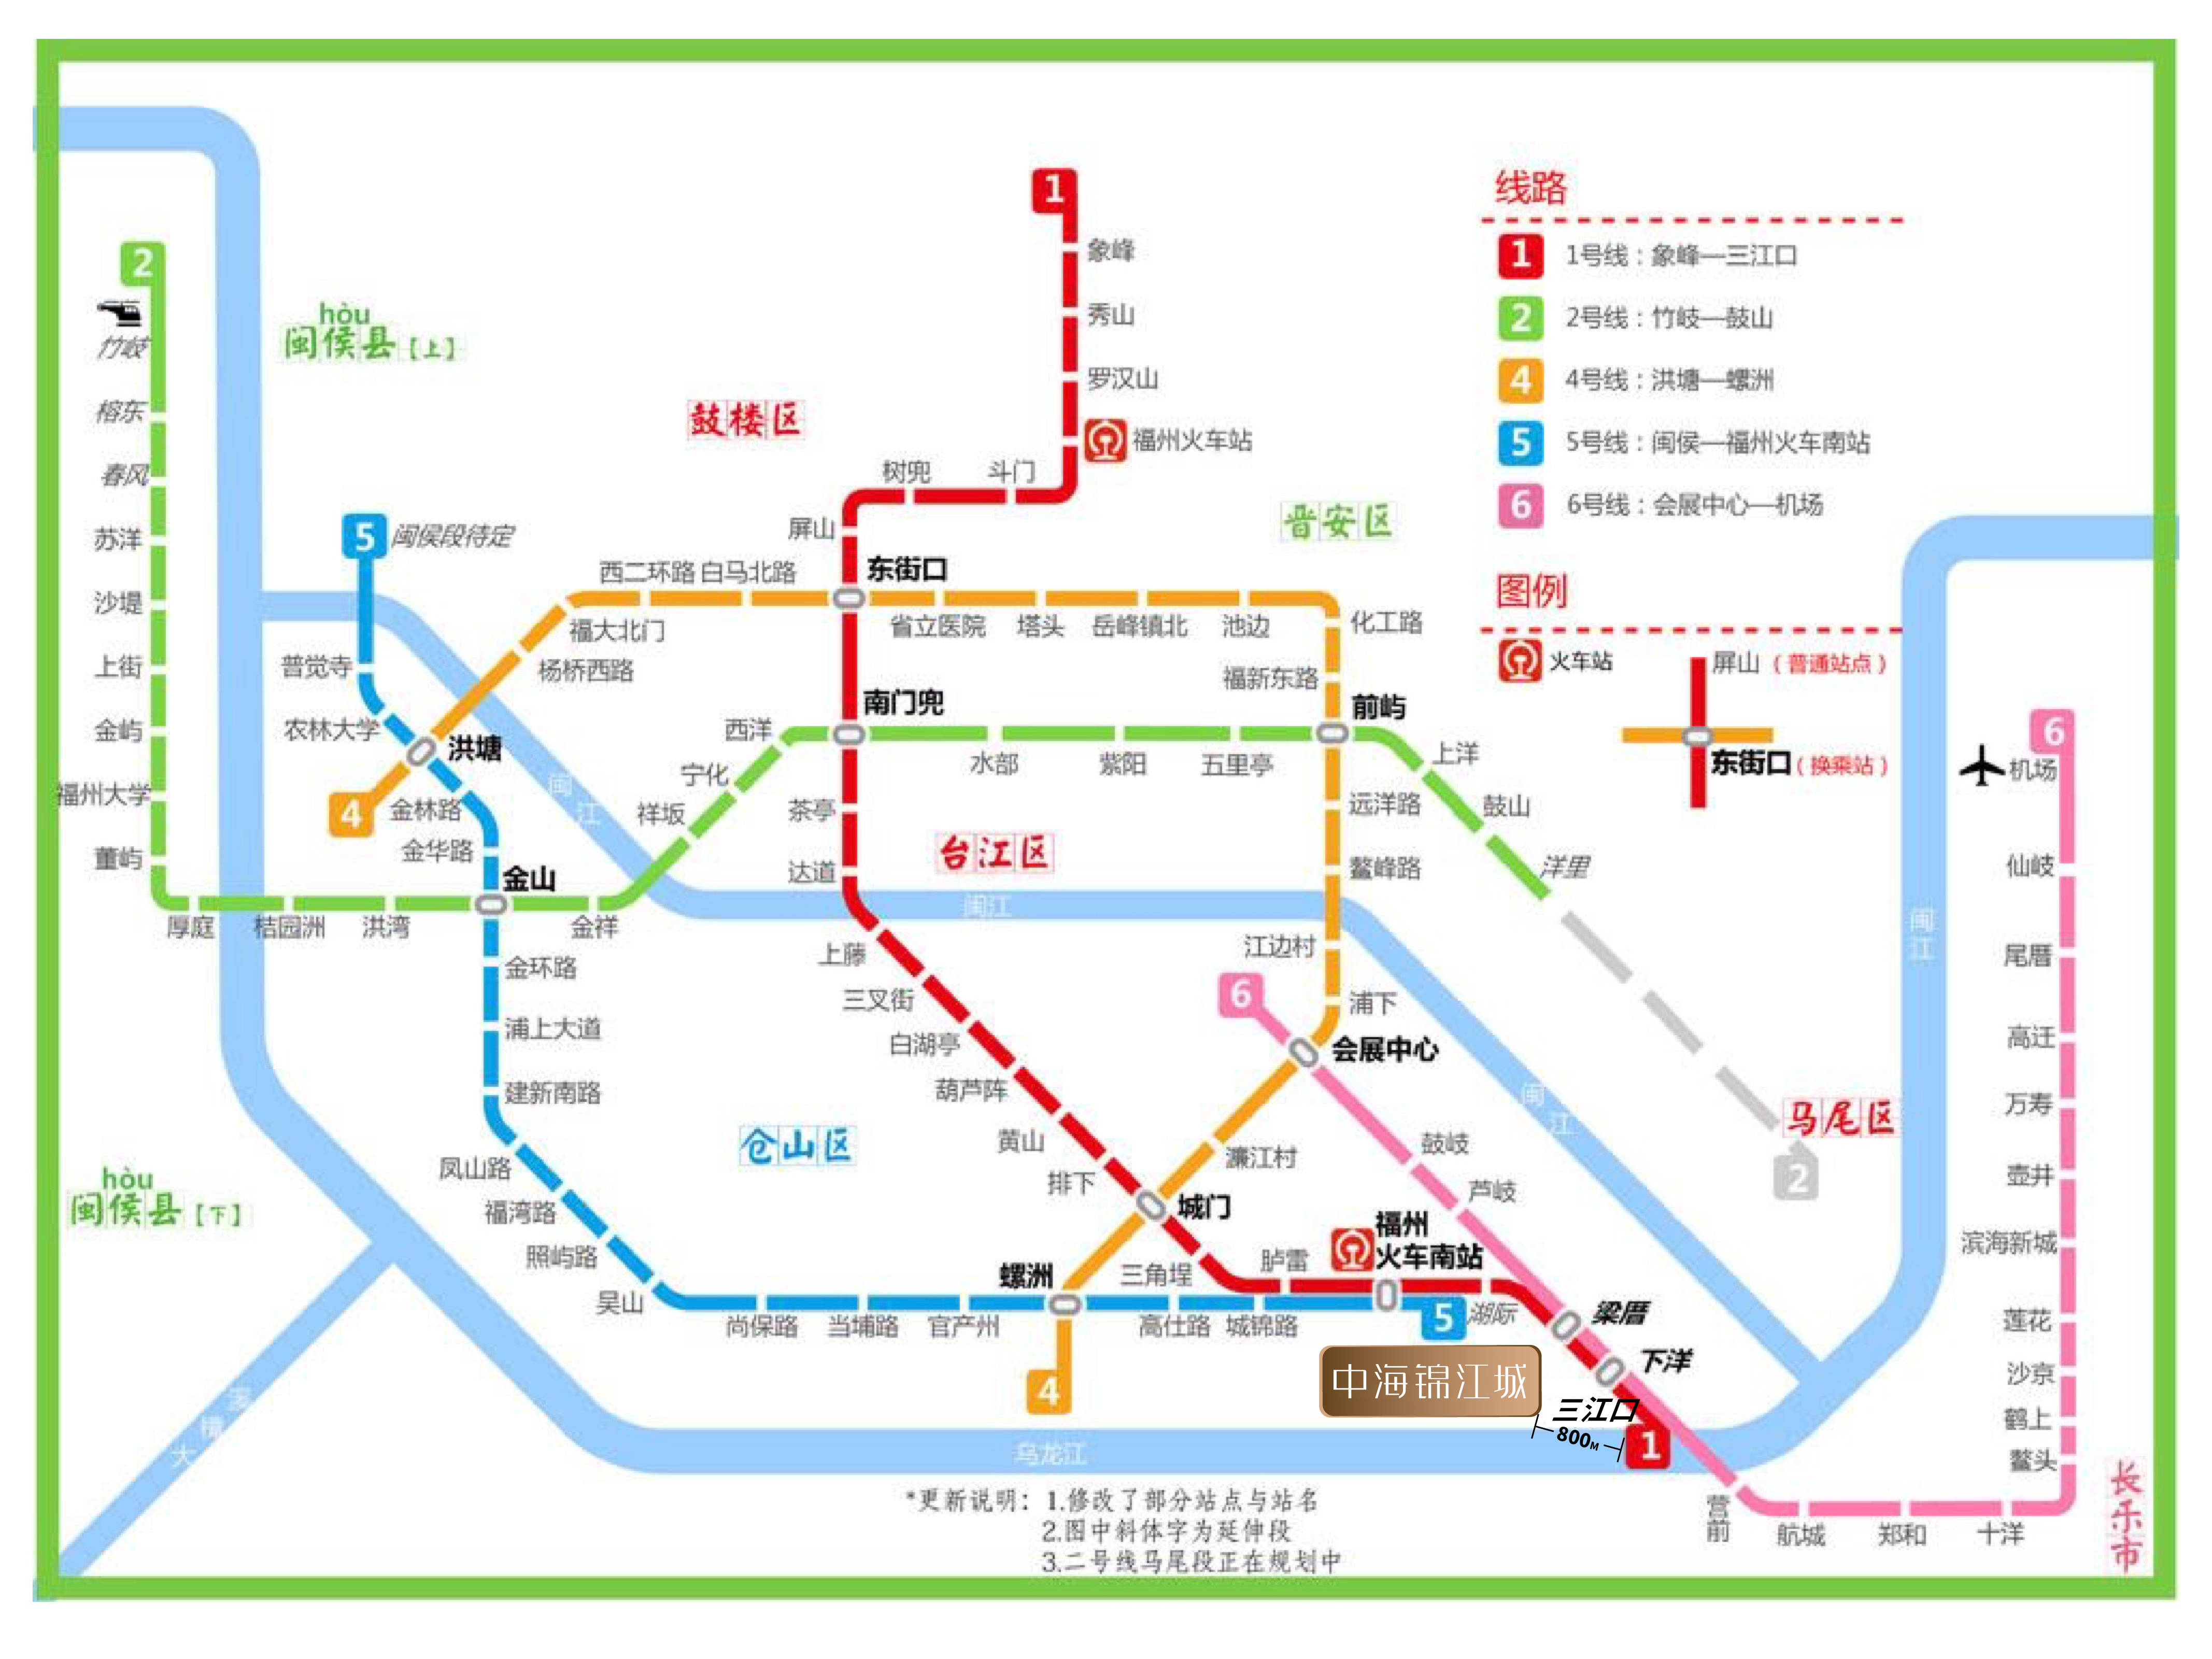 ① 双地铁交汇:地铁1号线三江口站(建设中,预计今年10月试运行福州6